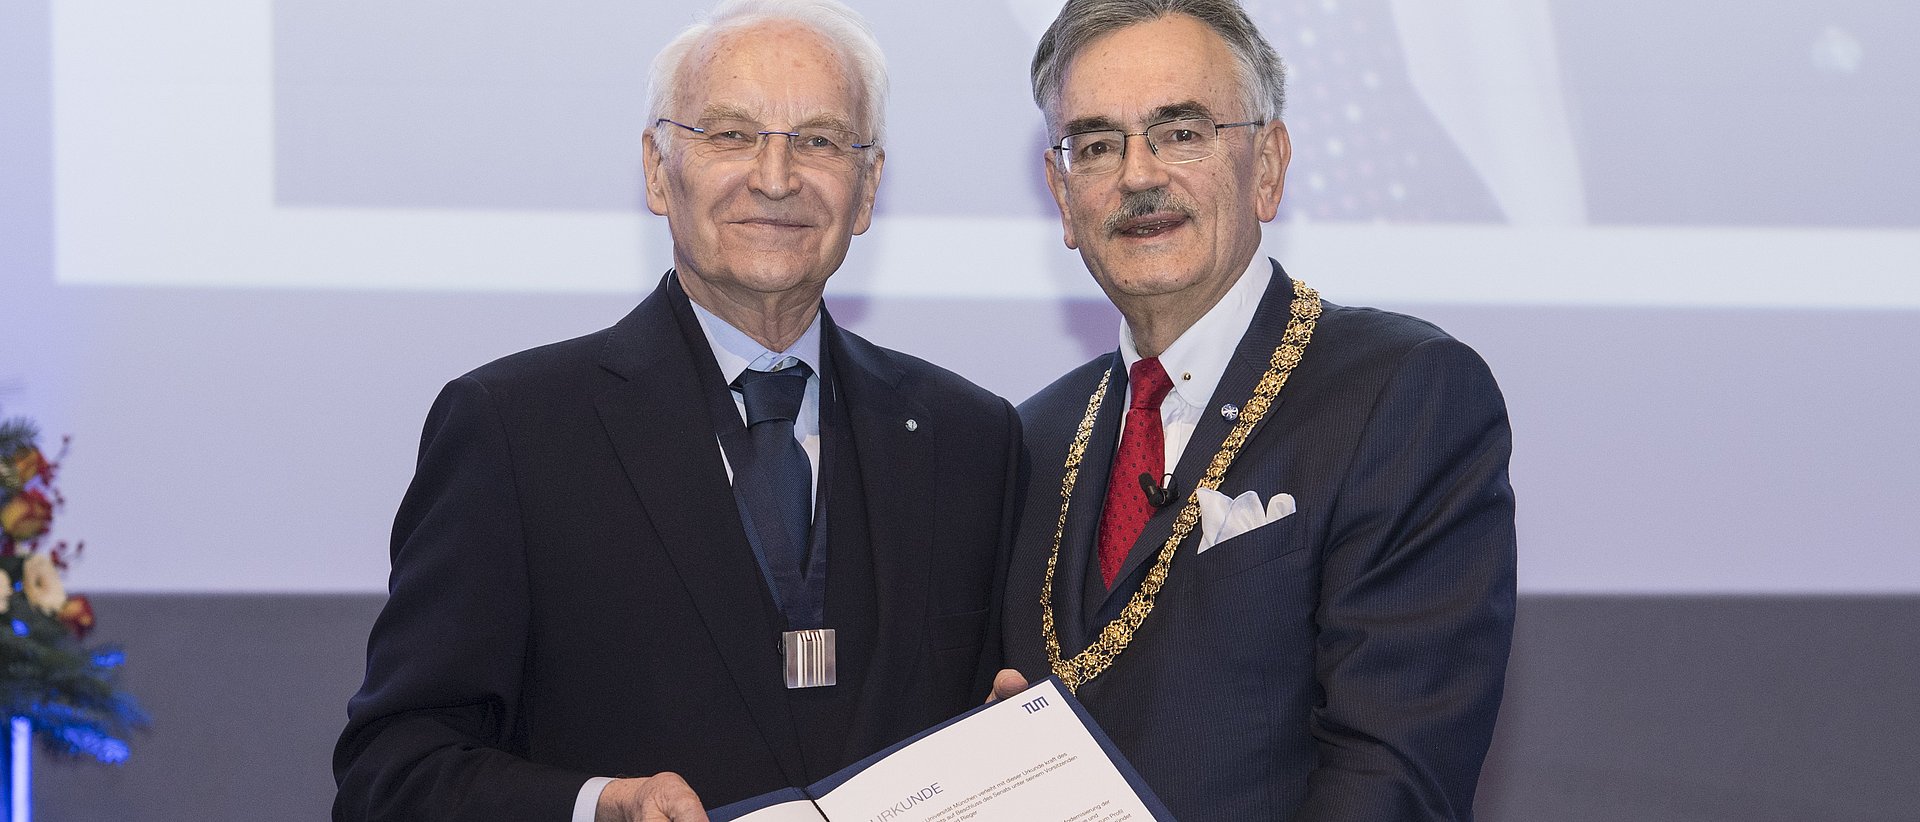 Präsident Prof. Wolfgang A. Herrmann (r.) überreicht Dr. Edmund Stoiber die Ehrensenatorenwürde der TUM.